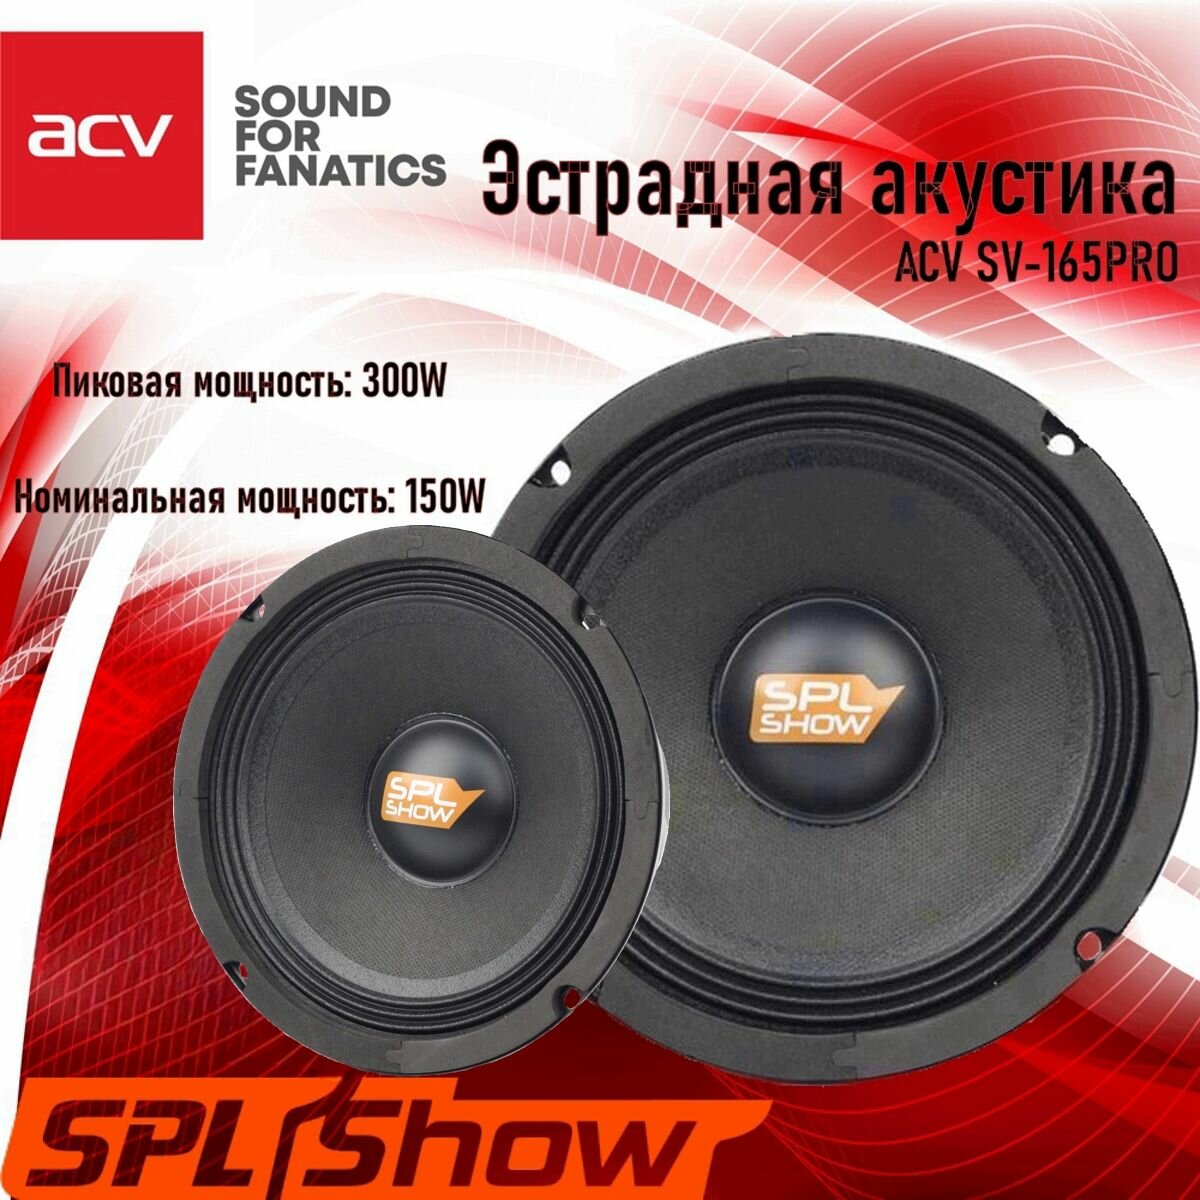 Колонки для автомобиля ACV SV-165PRO / эстрадная акустика 16,5 см. (6,5 дюймов) / комплект 2 шт.